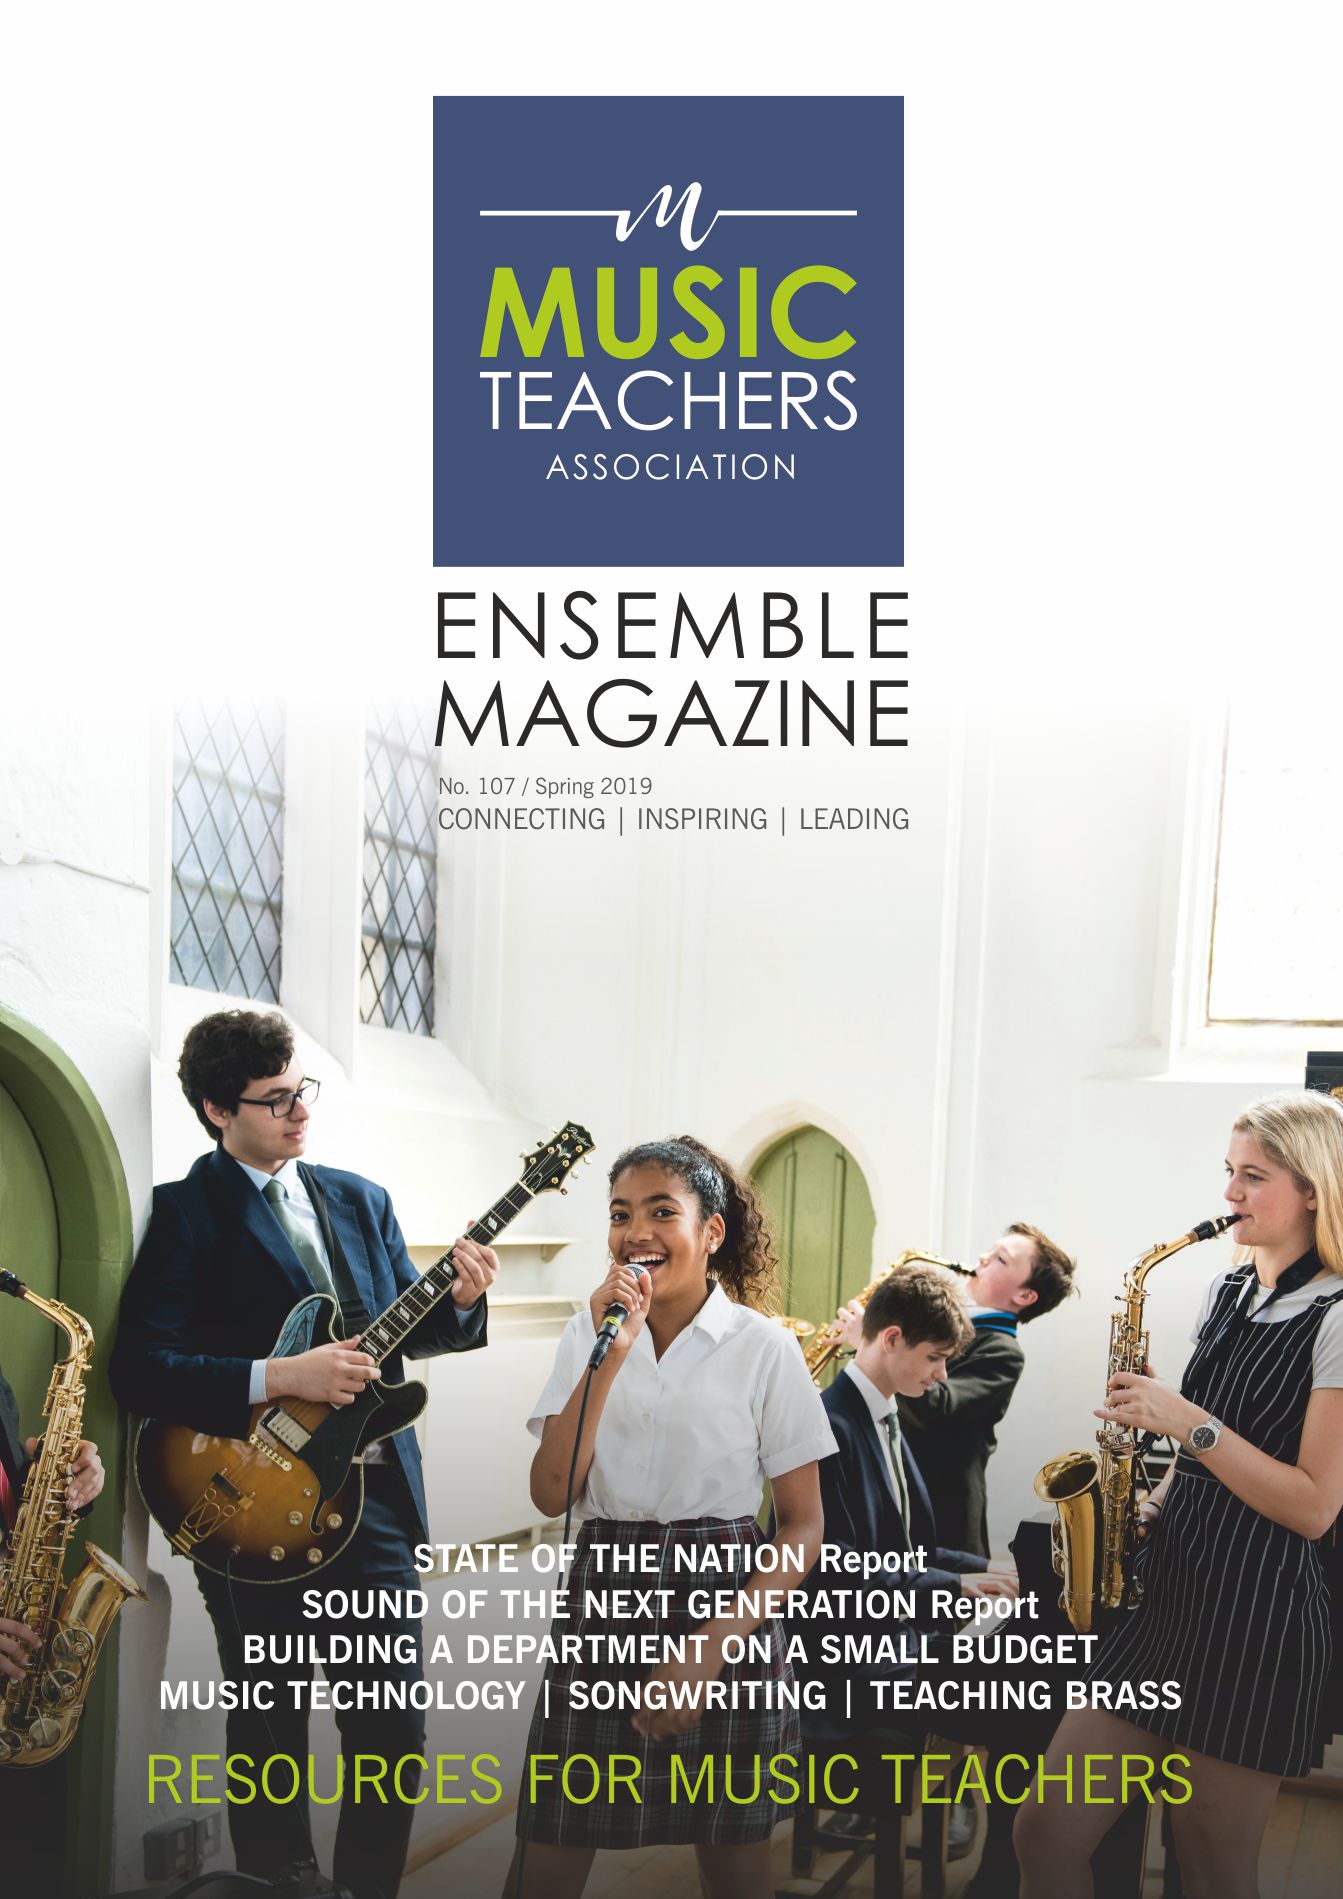 Music Teachers Association #WeAreMusicTeachers #musiced